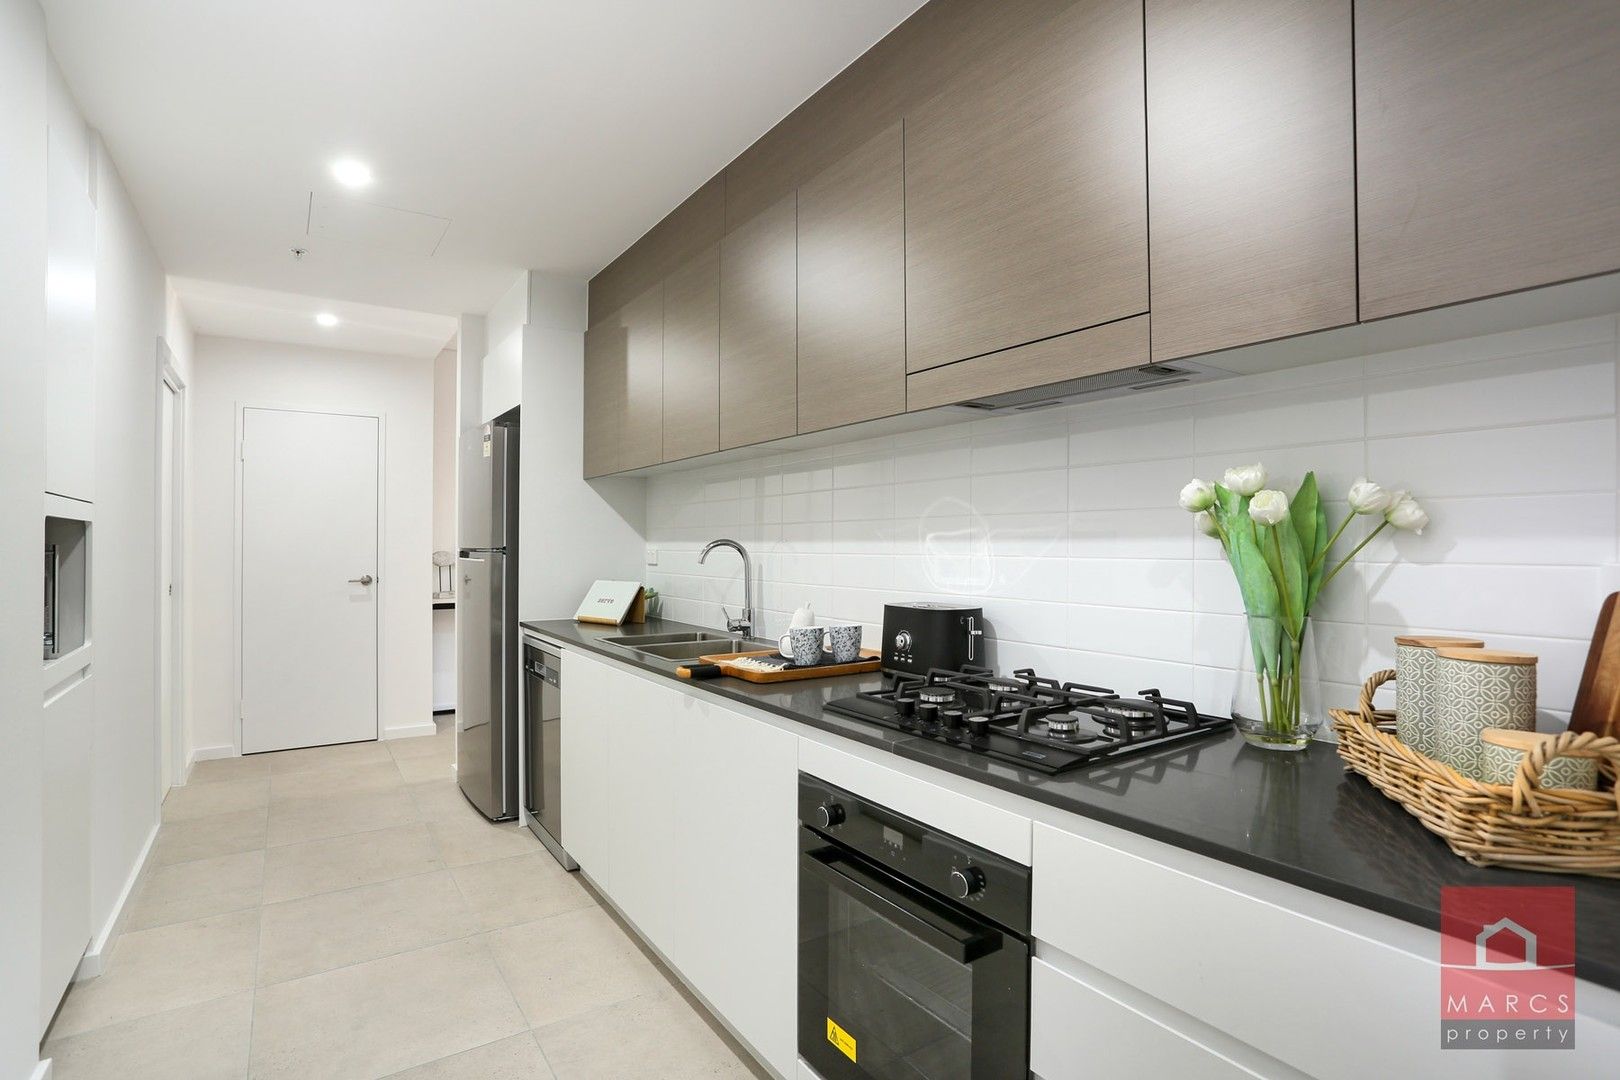 1 bedrooms Apartment / Unit / Flat in G01/23-25 Toongabbie Road TOONGABBIE NSW, 2146